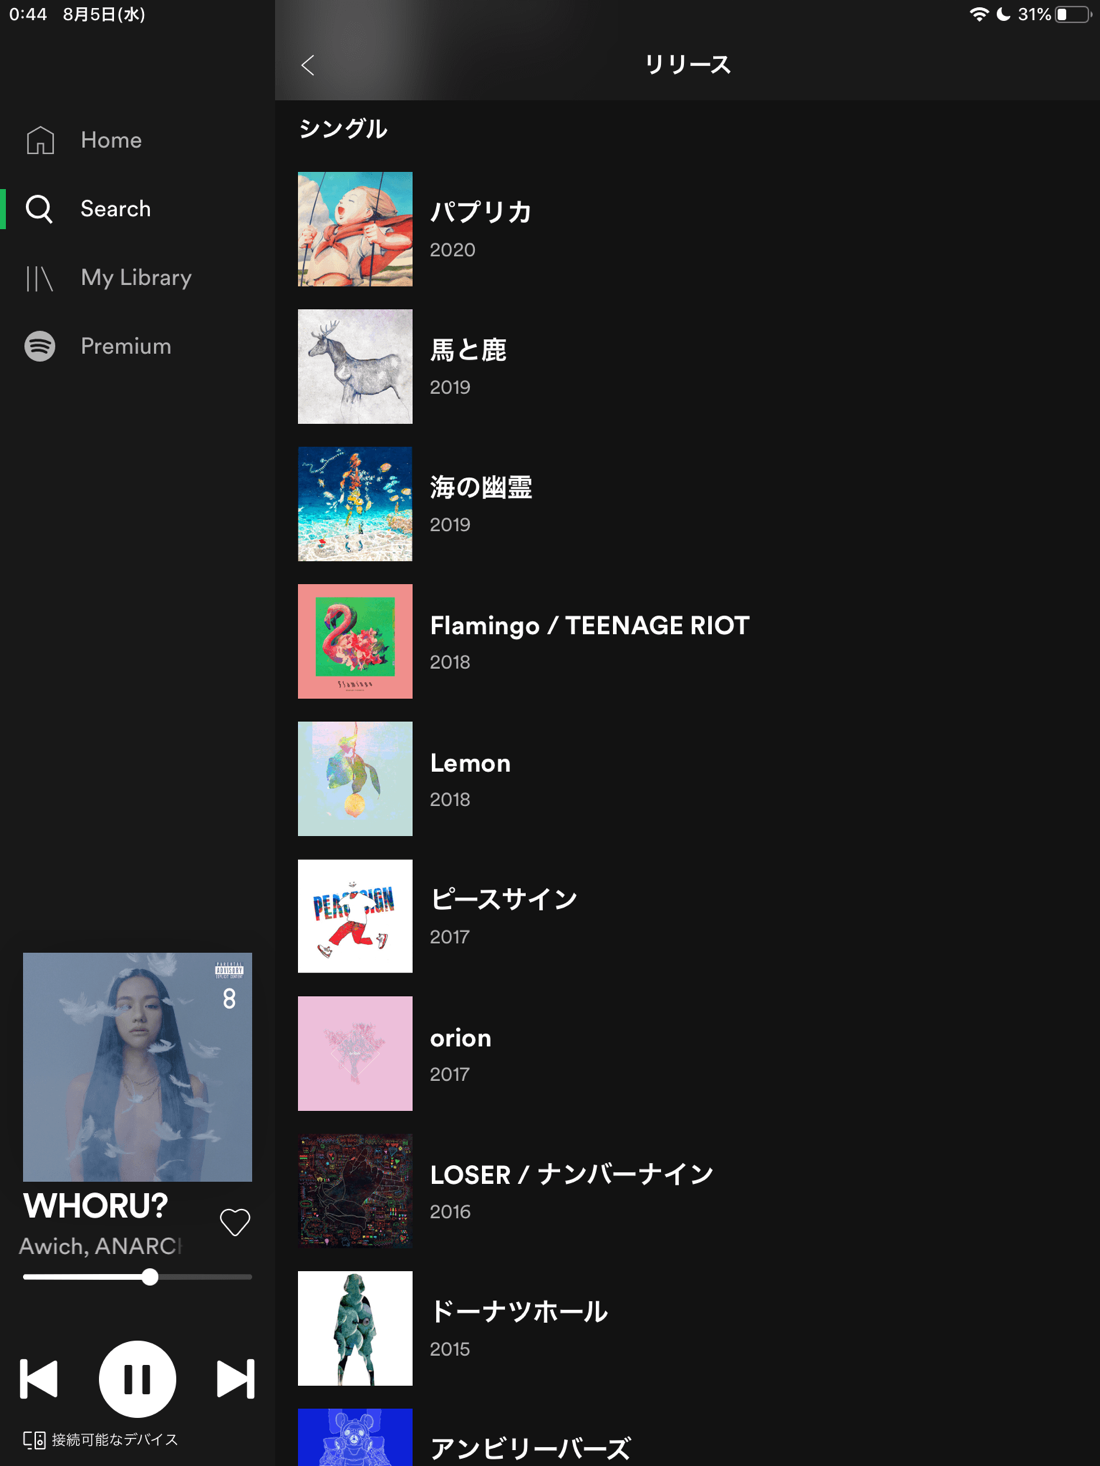 Spotify yonezu 01